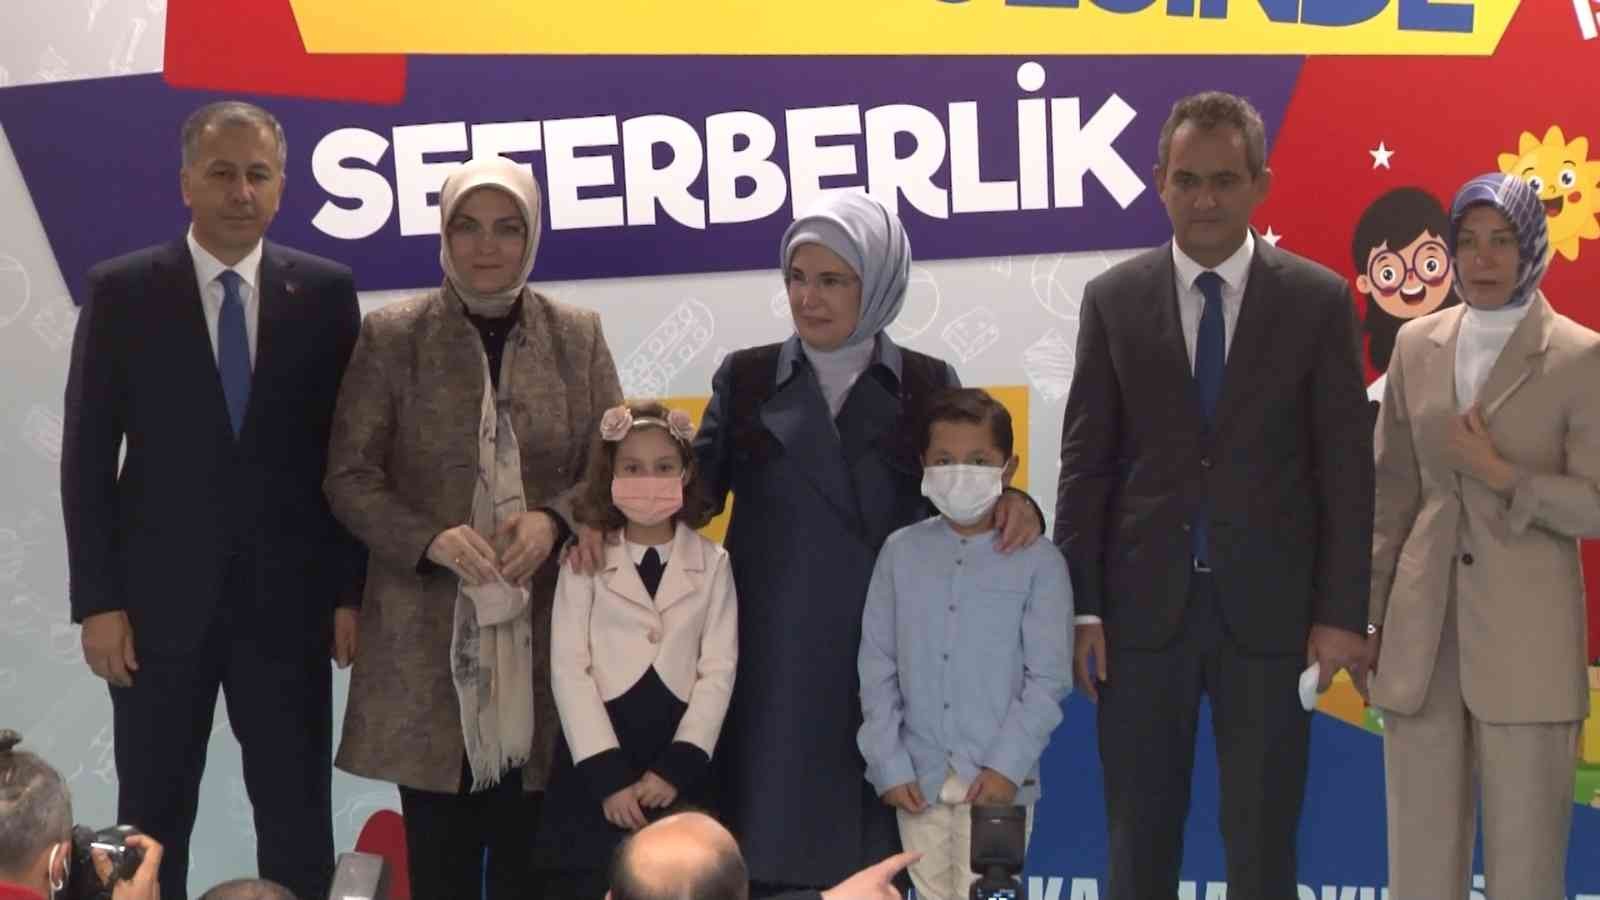 Emine Erdoğan: “Kadınların güçlenmesinin bir sonraki aşaması, daha güçlü ailelerin ortaya çıkmasıdır” #istanbul